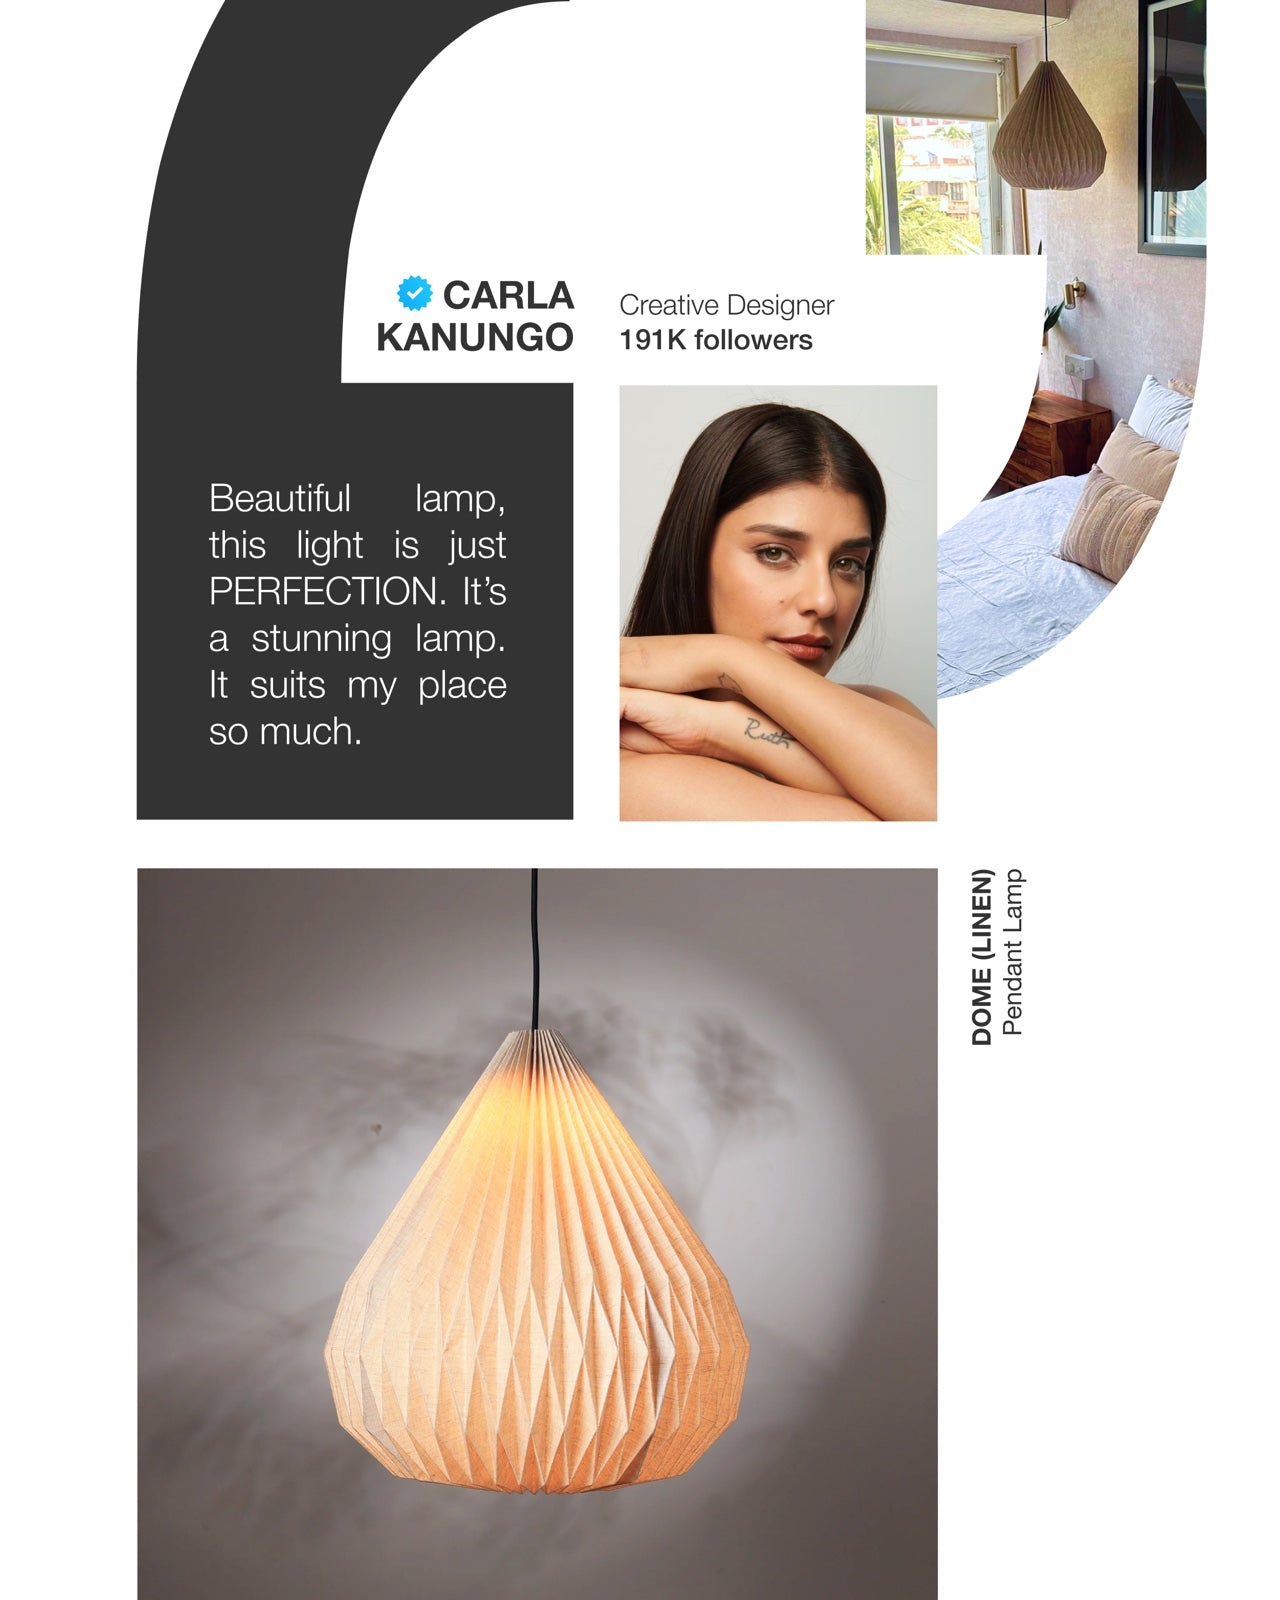 Dome Pendant Lamp - 100% European Linen Pendant Light, Elegant Dome Shape, Modern Design Hanging Light